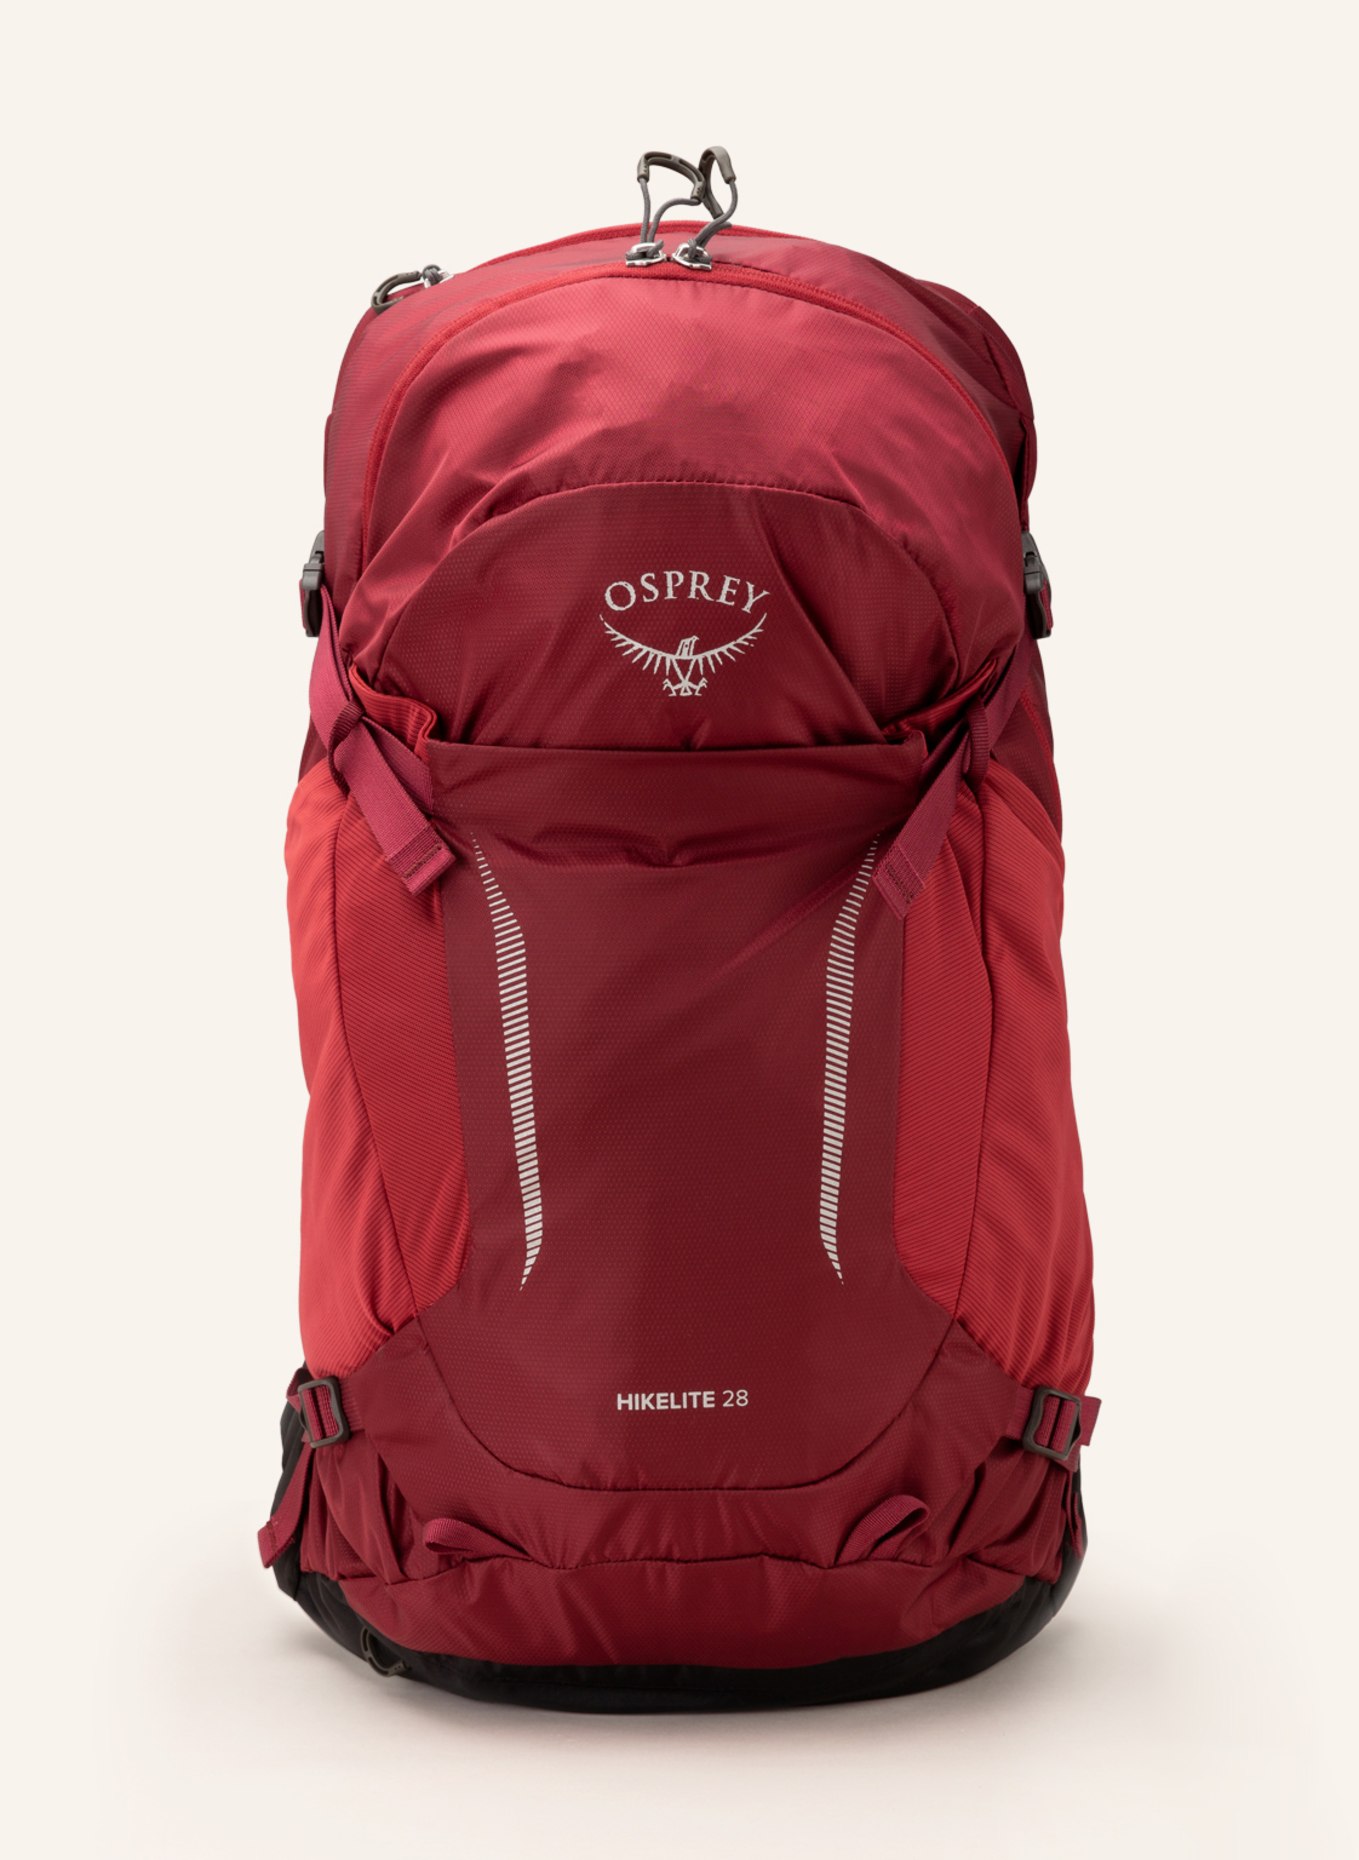 OSPREY Backpack HIKELITE 28 l, Color: DARK RED (Image 1)